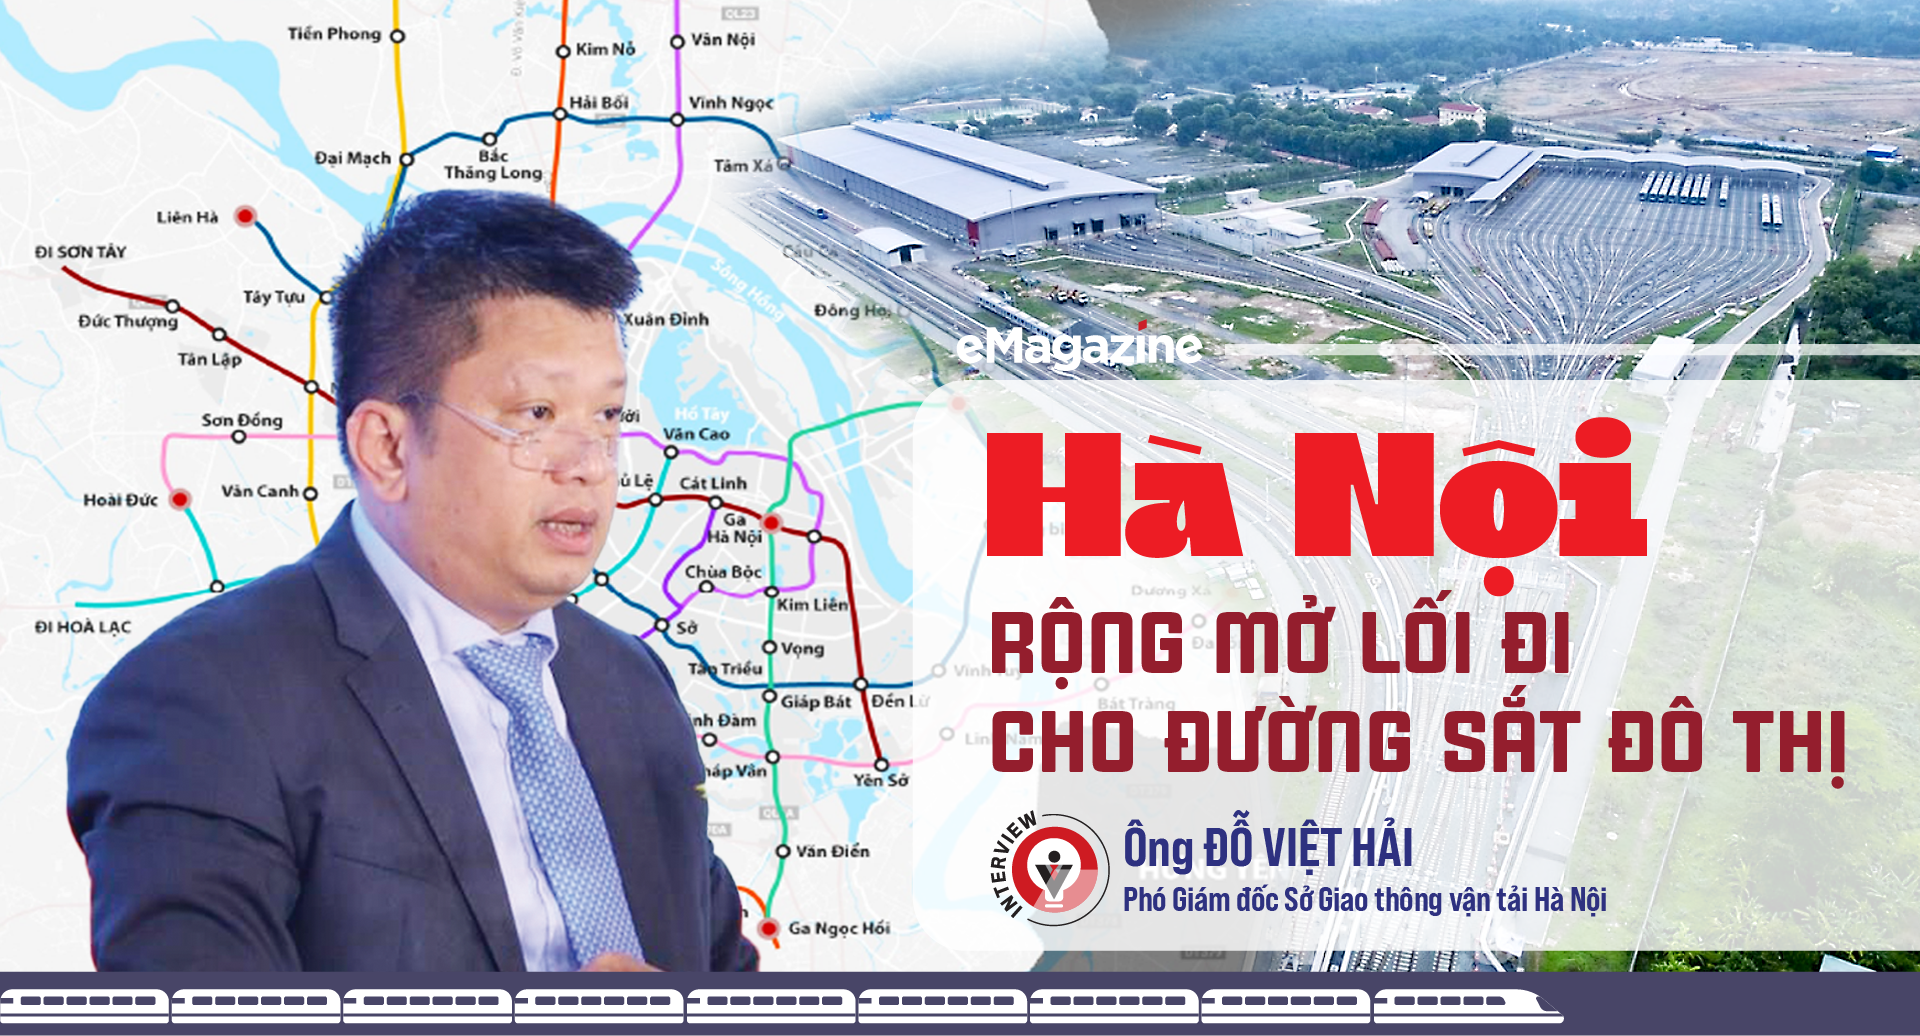 Hà Nội rộng mở lối đi cho đường sắt đô thị  - Ảnh 1